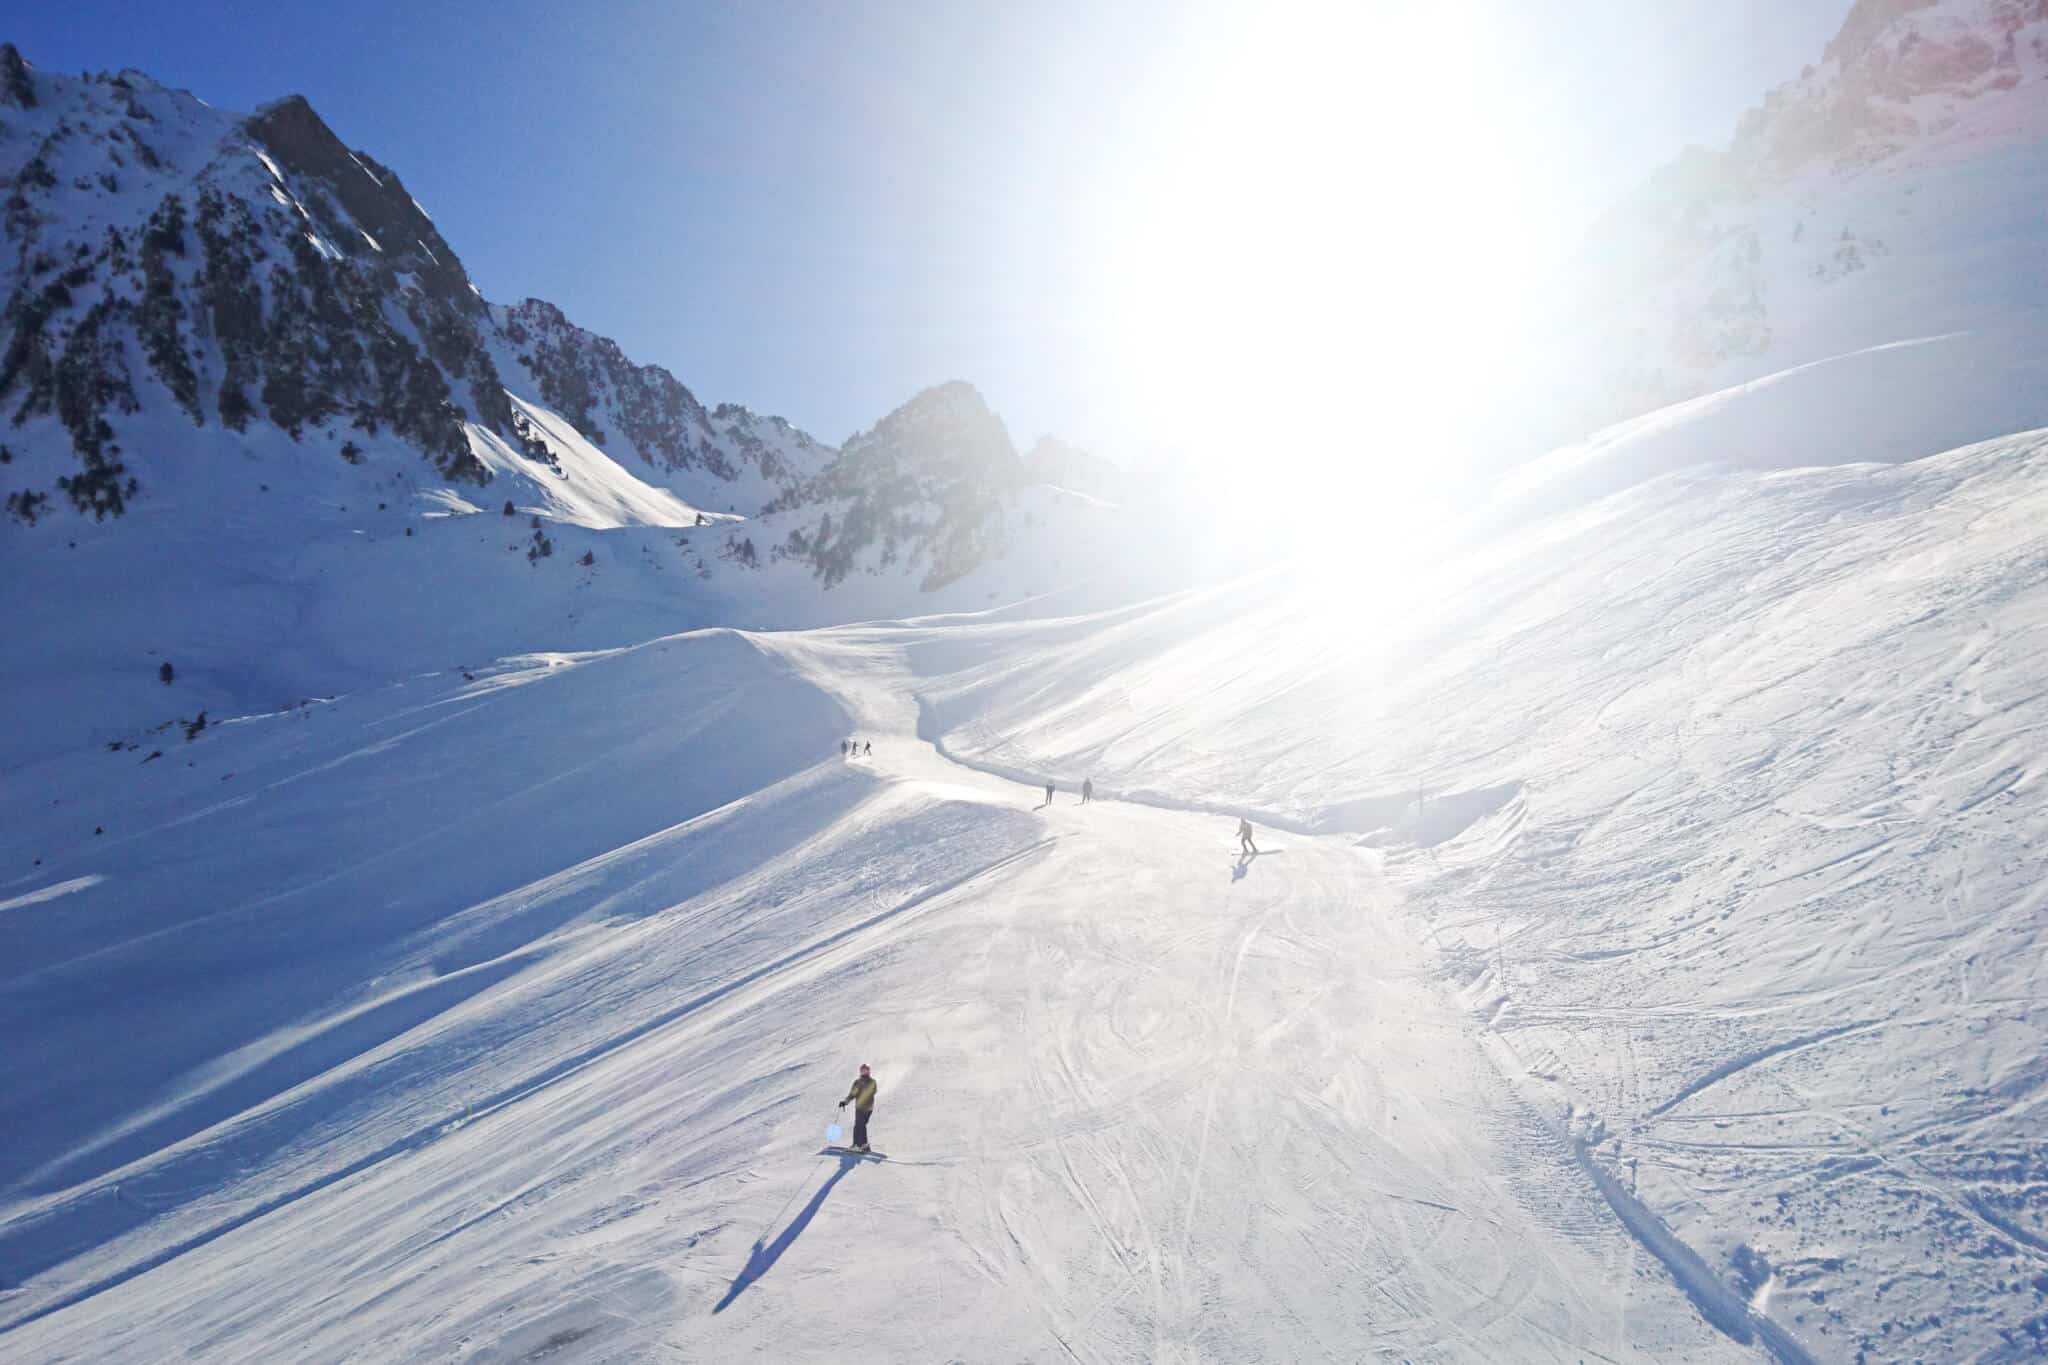 activite-ski-grand-tourmalet-les-gourmets-de-la-glisse-6bae